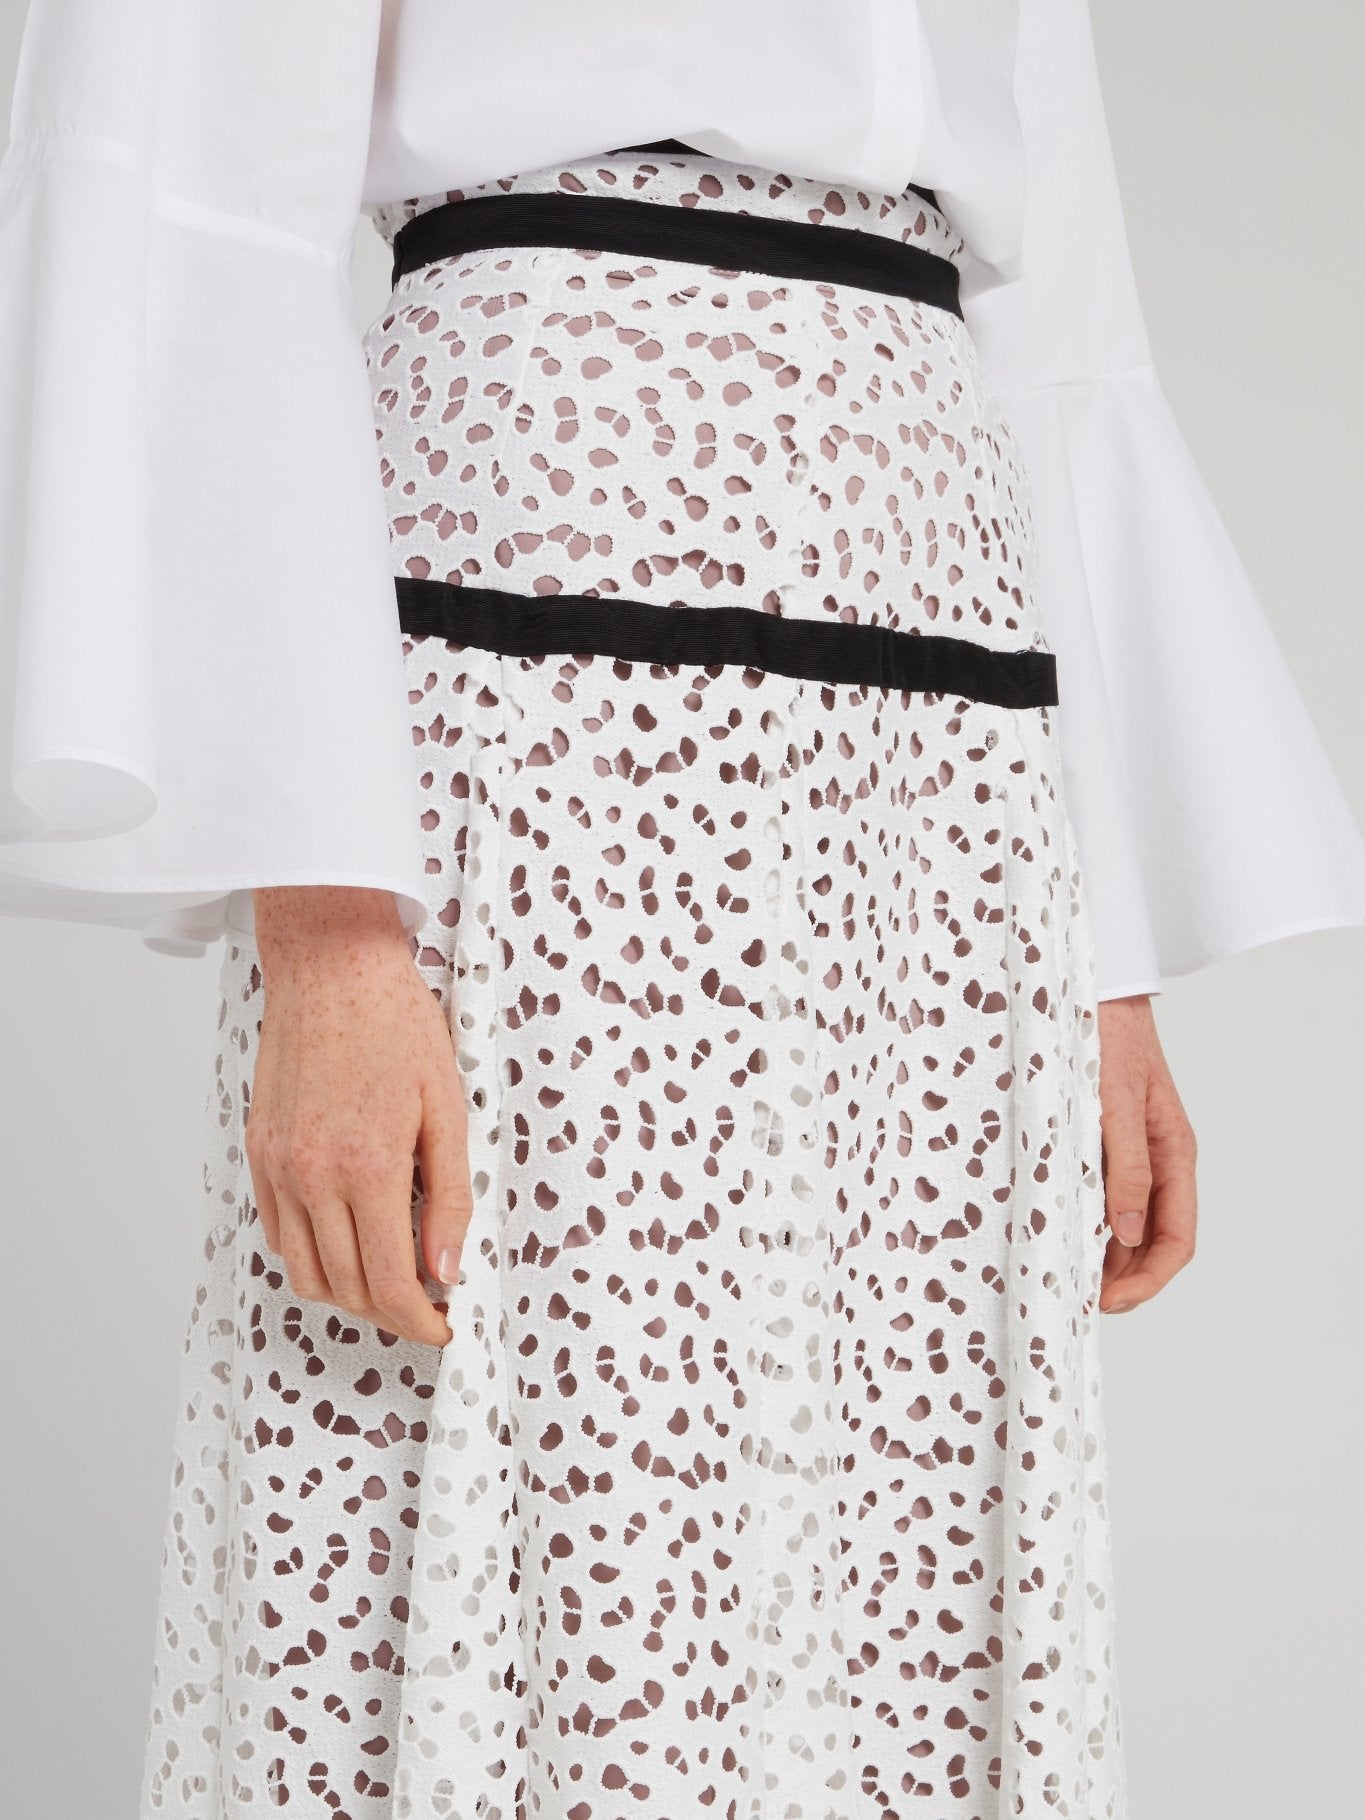 White Perforated Midi Skirt